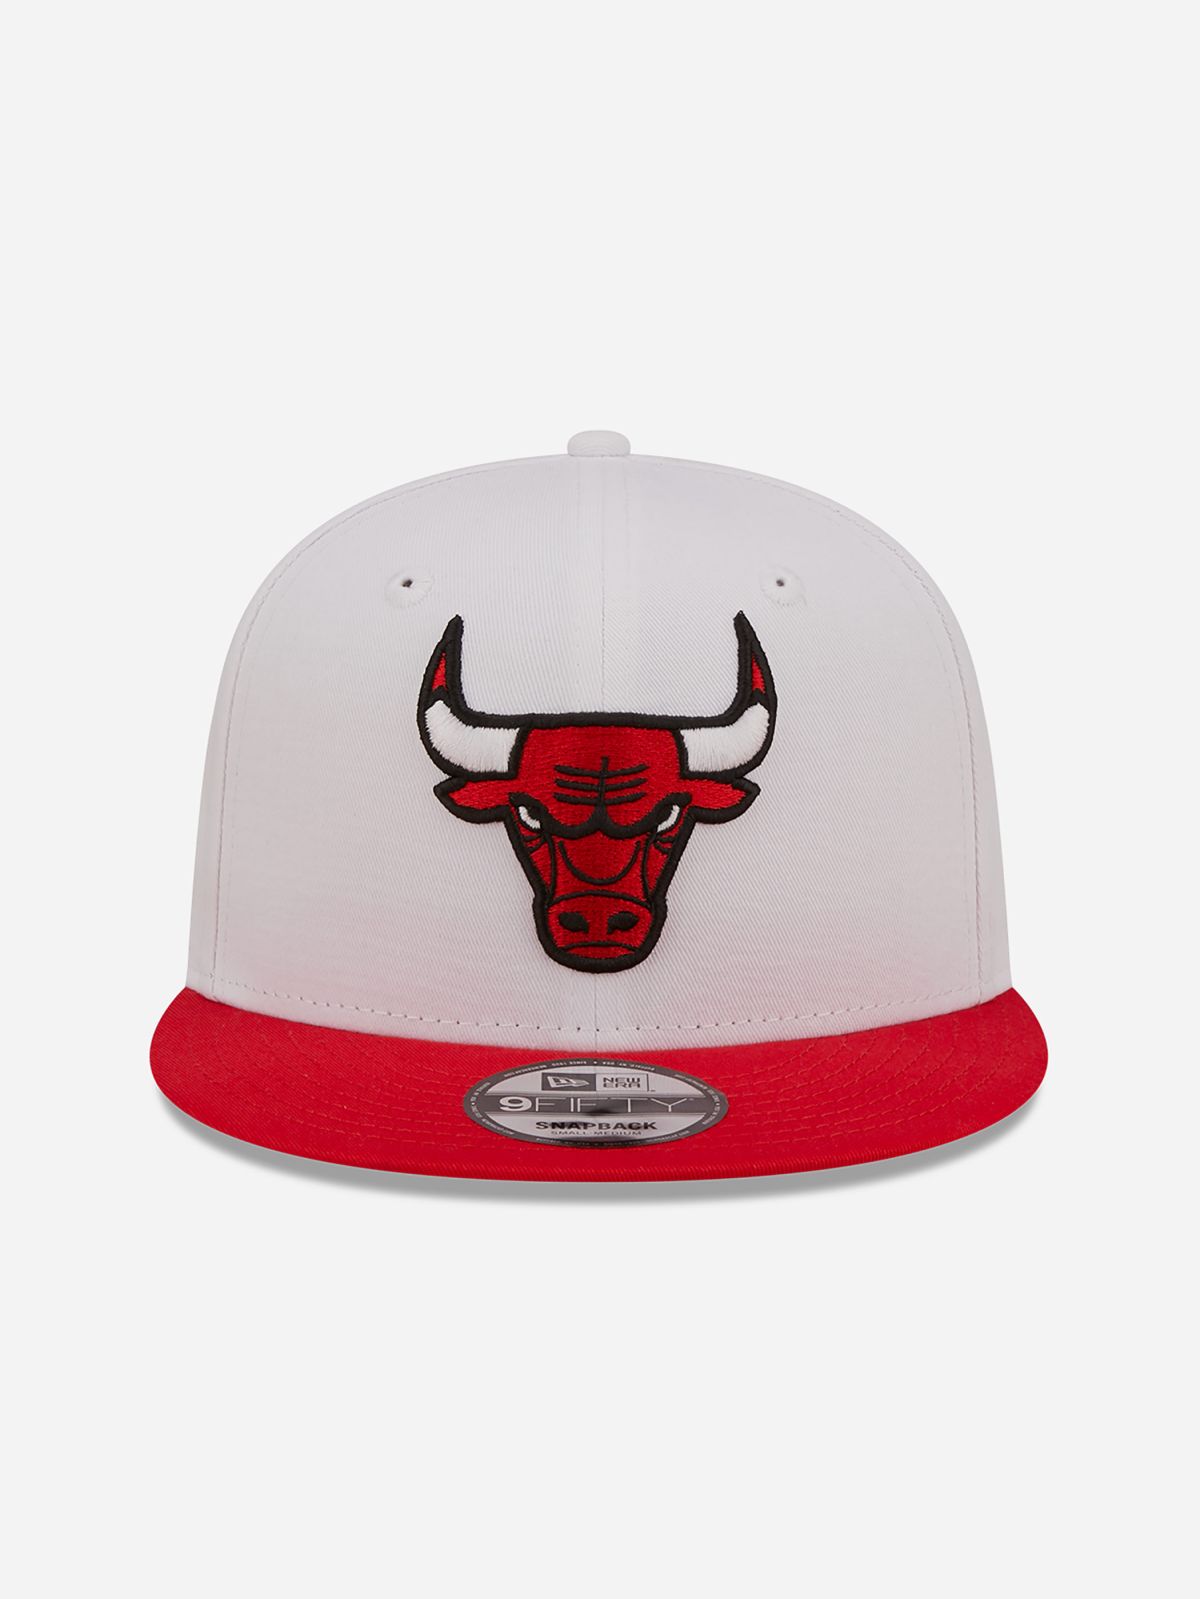  כובע מצחייה לוגו Chicago Bulls / גברים של NEW ERA